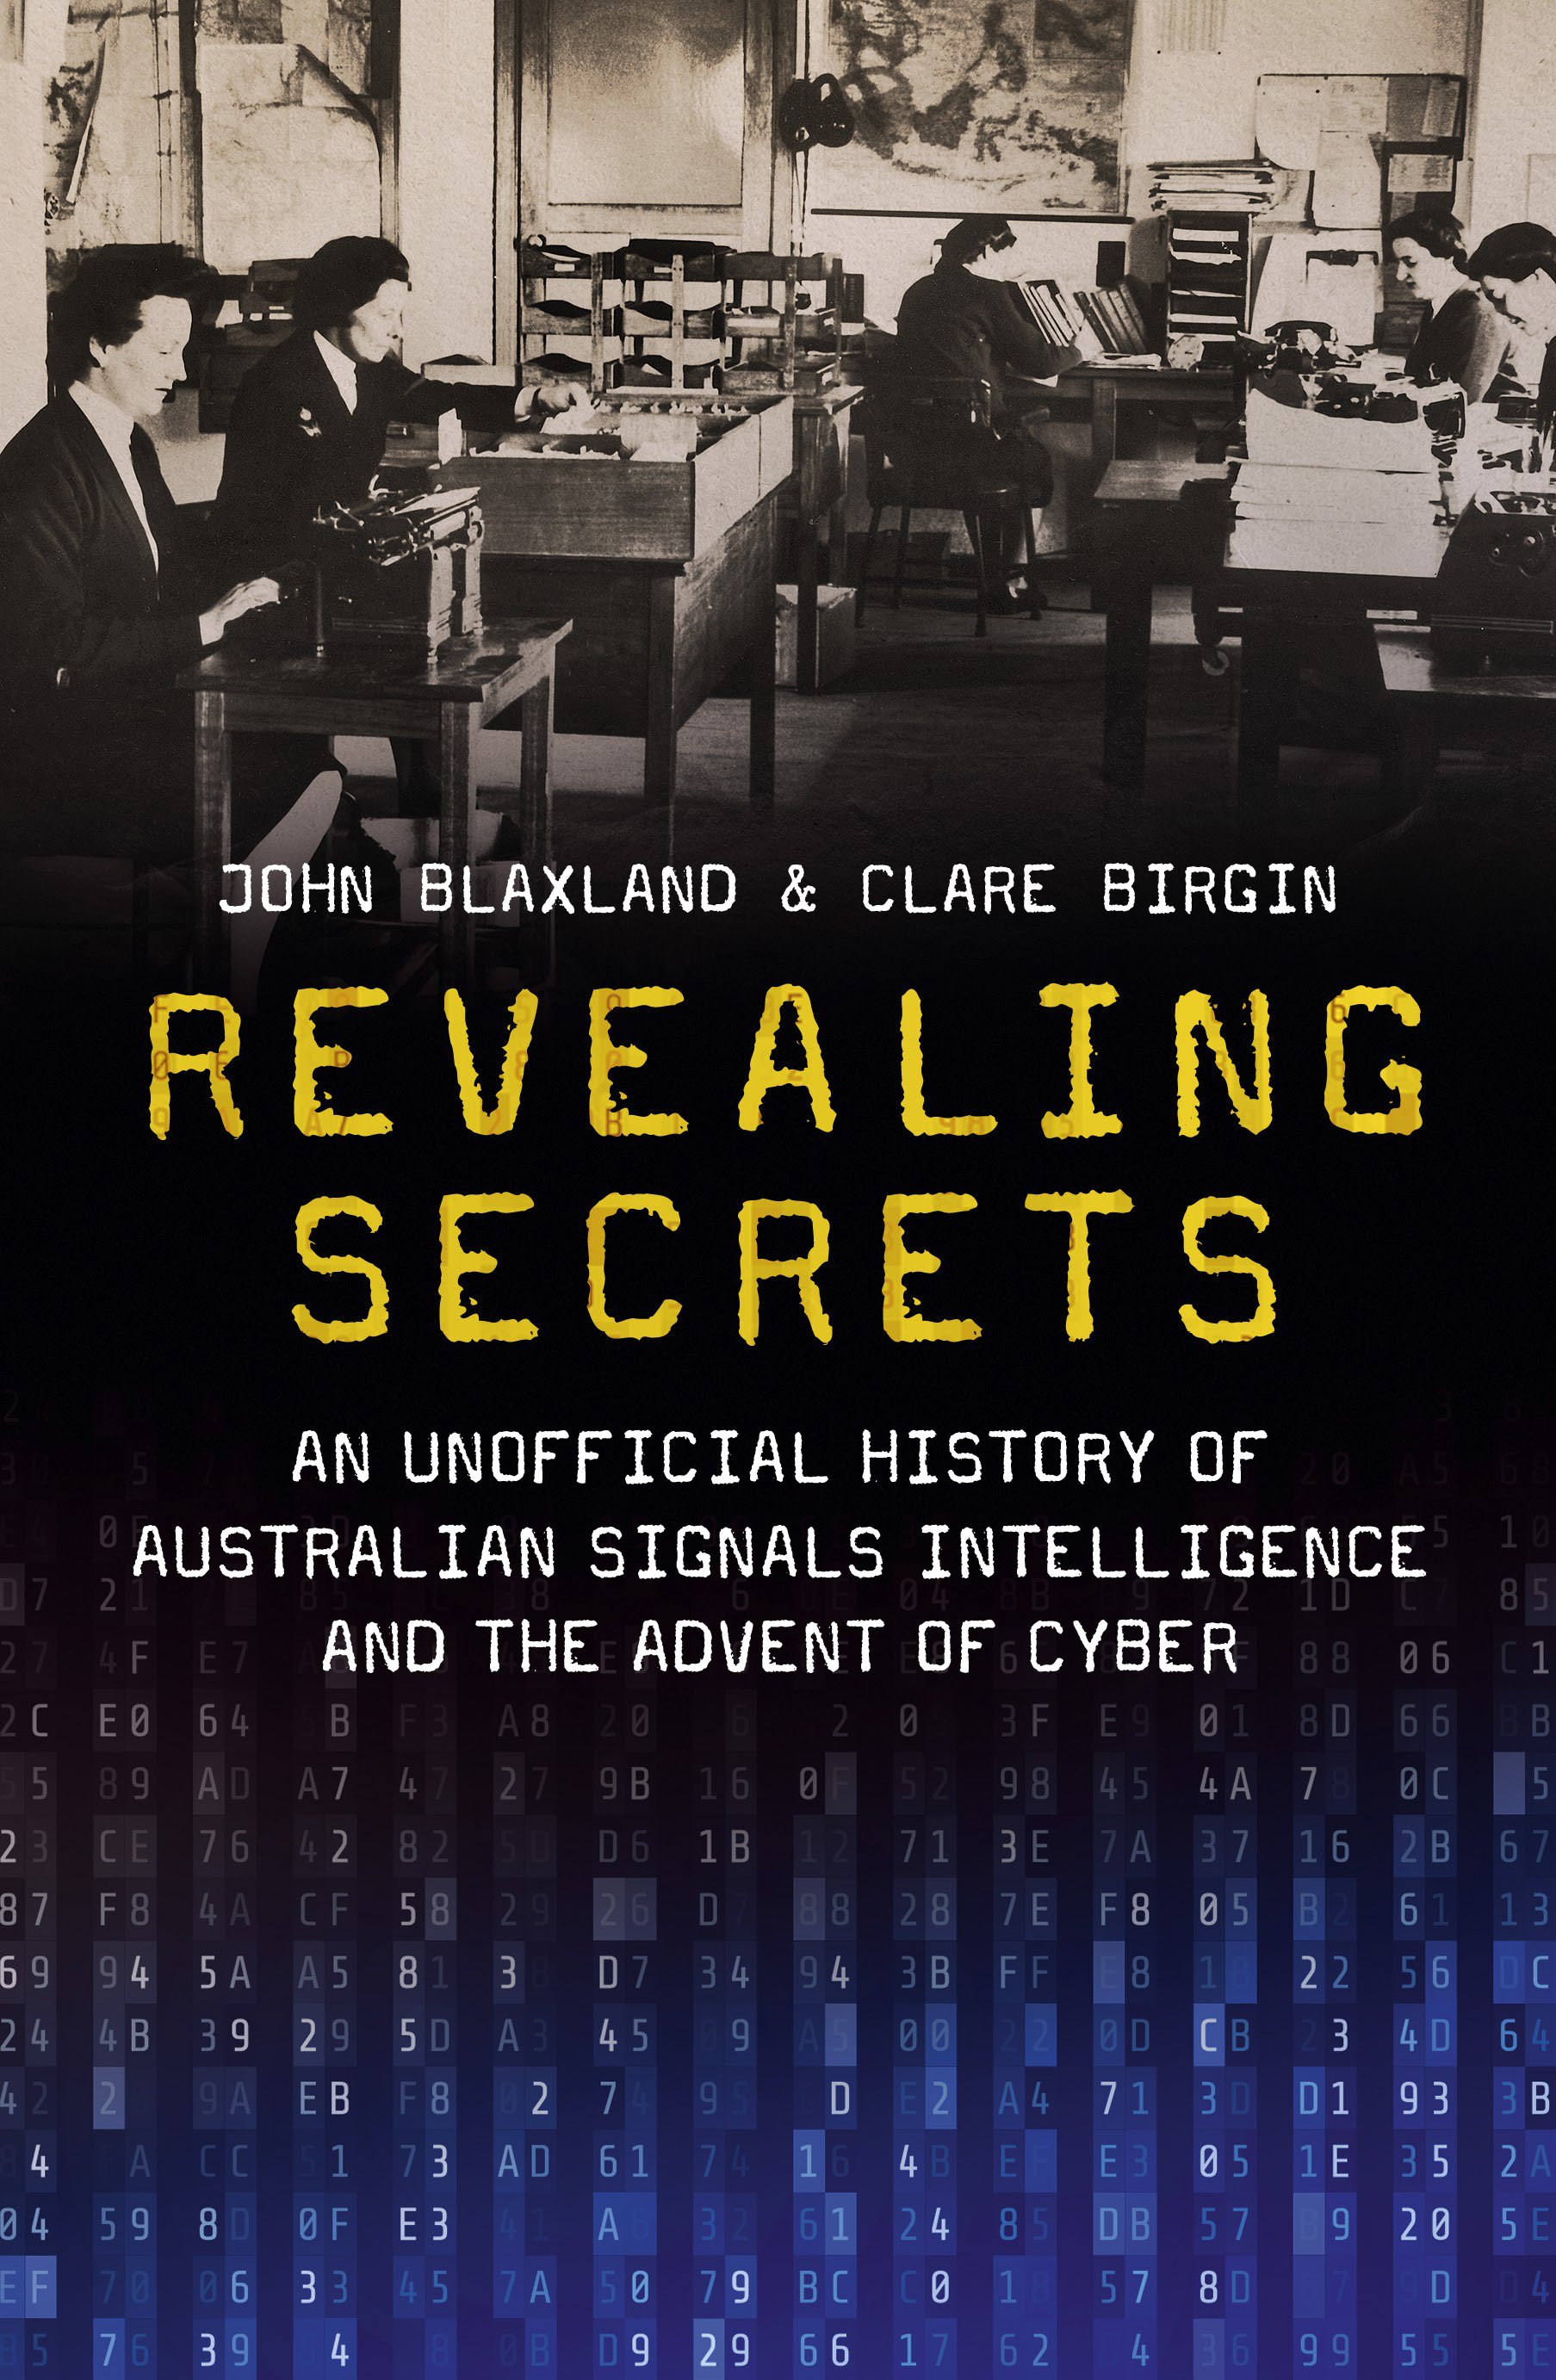 Revealing Secrets by John Blaxland & Clare Birgin